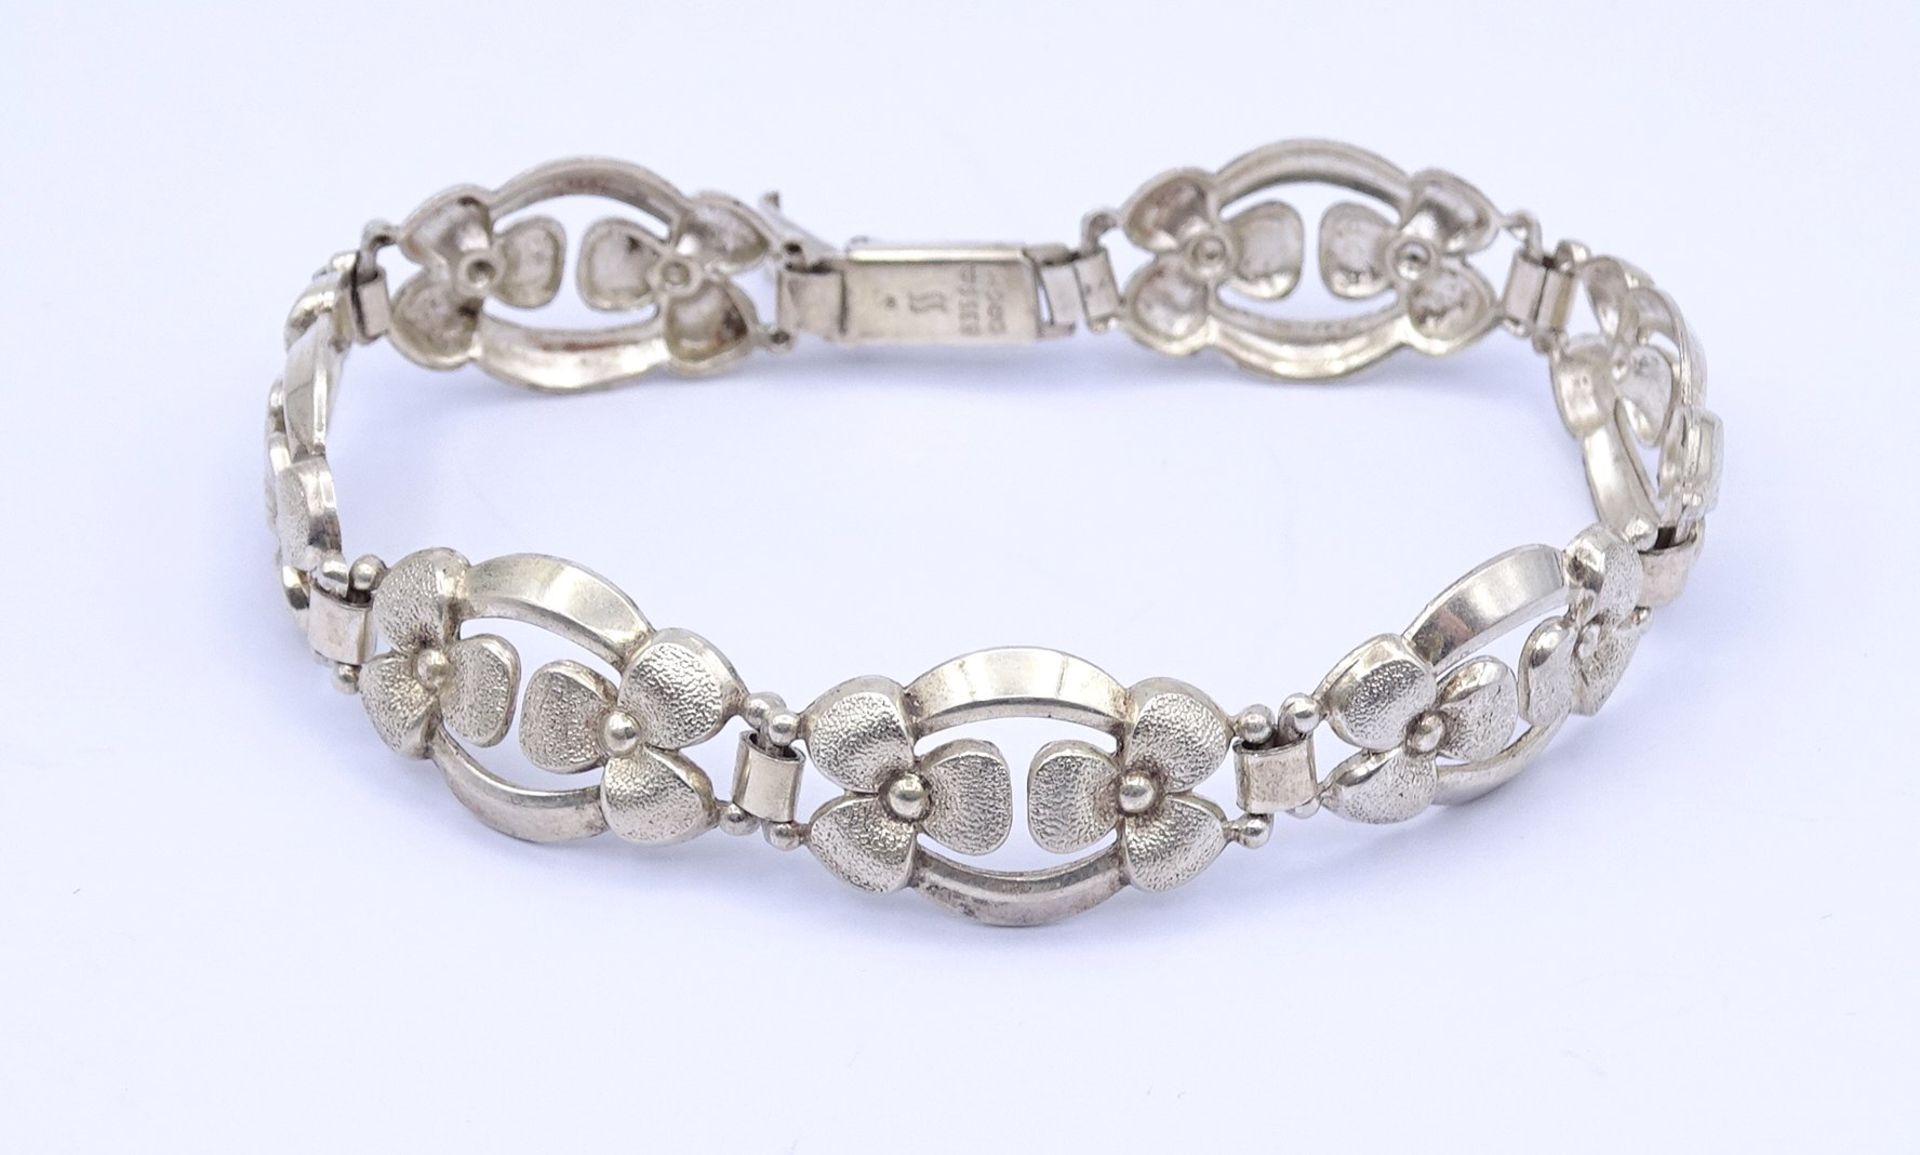 835er Silber Armband, bez. DRGM , L. 18,5cm, 14,2g. - Image 2 of 4